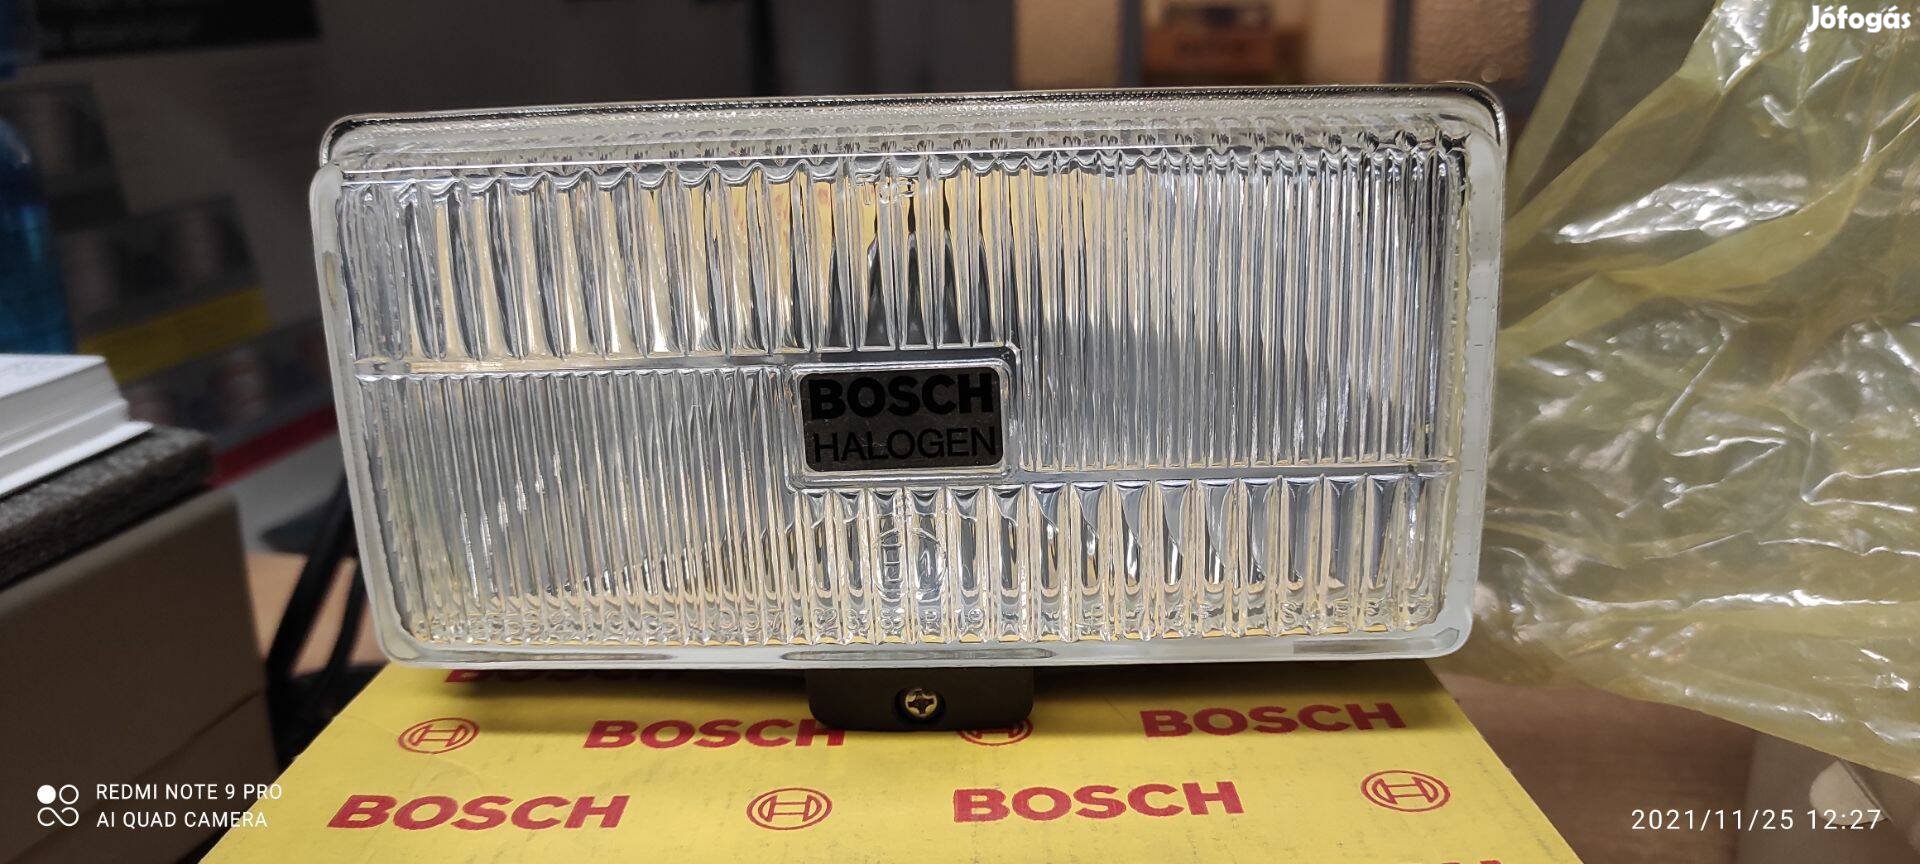 Bosch ködlámpa 170x85 Turing 170 gyári új akciós